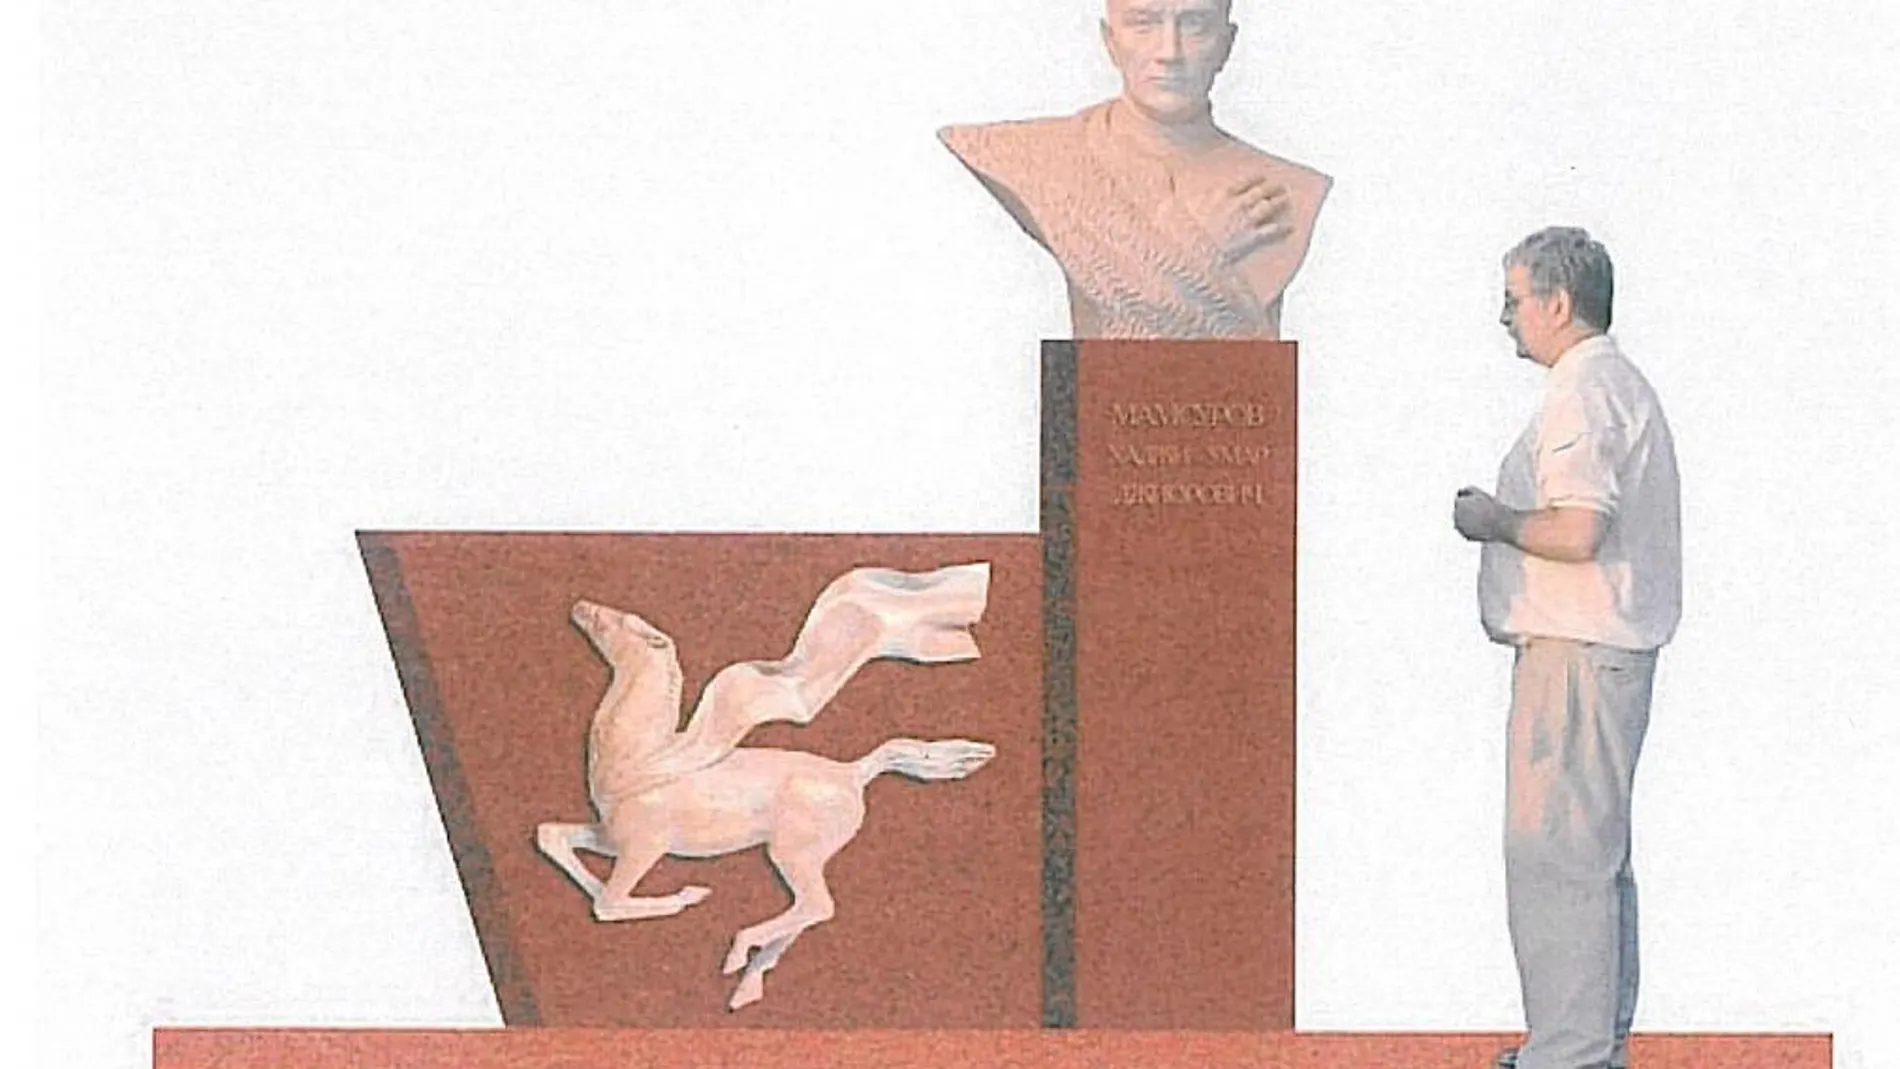 La escultura es obra de Zaur Dzanagov, mide dos metros de altura y pesa entre 600 y 700 kilos. Consta de un busto de Mamsurov (de 80 centímetros) realizado en bronce. La imagen es un boceto de la obra original que finalmente, en vez de un caballo alado, tendrá dos soldados republicanos realizados en bronce.